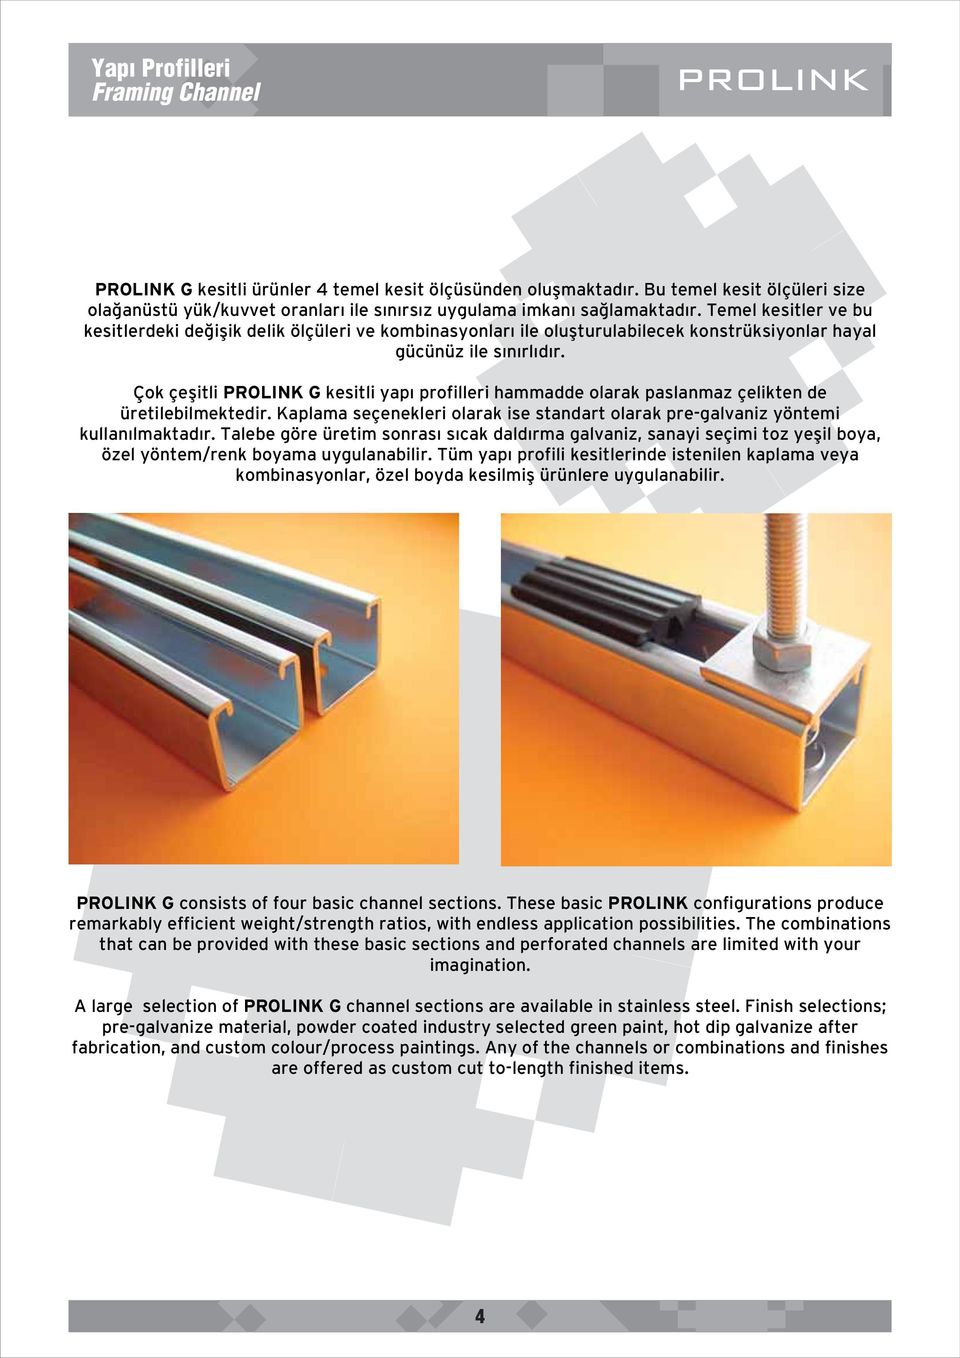 Çok çeflitli PROLINK G kesitli yap profilleri hammadde olarak paslanmaz çelikten de üretilebilmektedir. Kaplama seçenekleri olarak ise standart olarak pre-galvaniz yöntemi kullan lmaktad r.